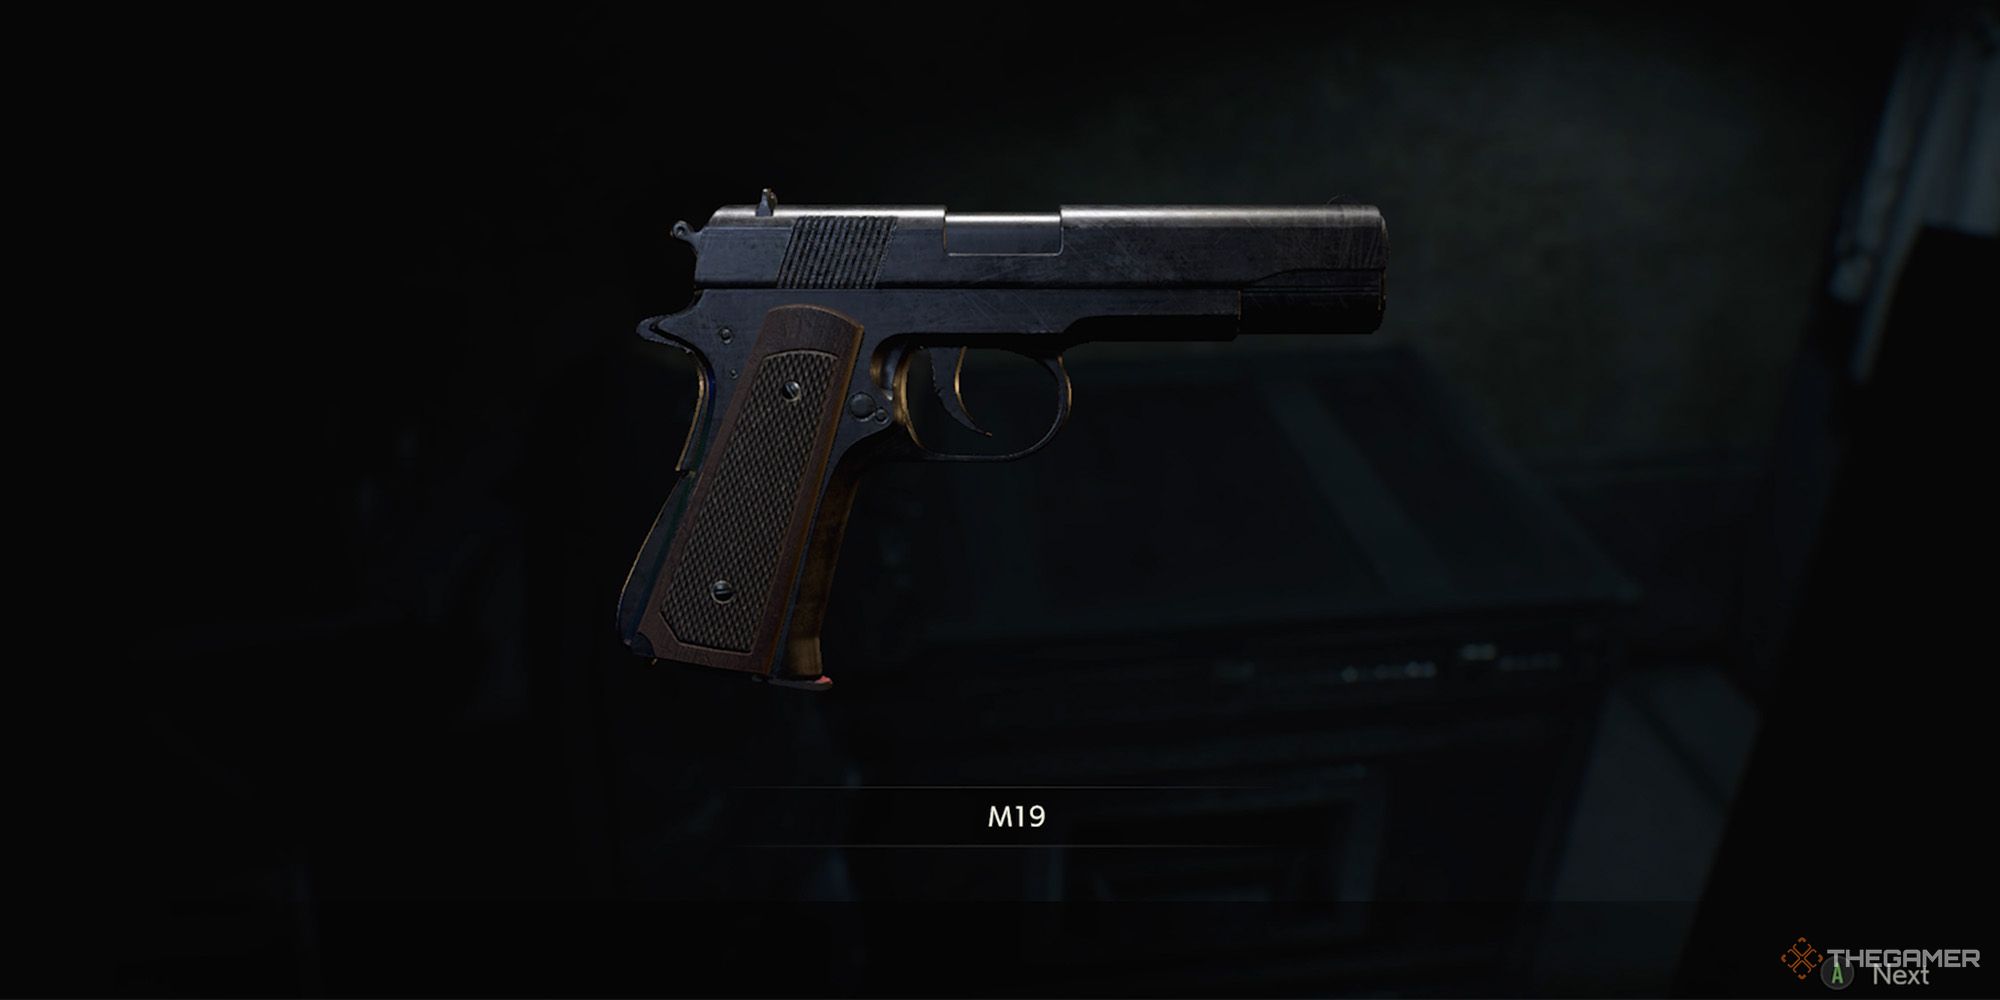 The M19 gun from Resident Evil 2 Remake